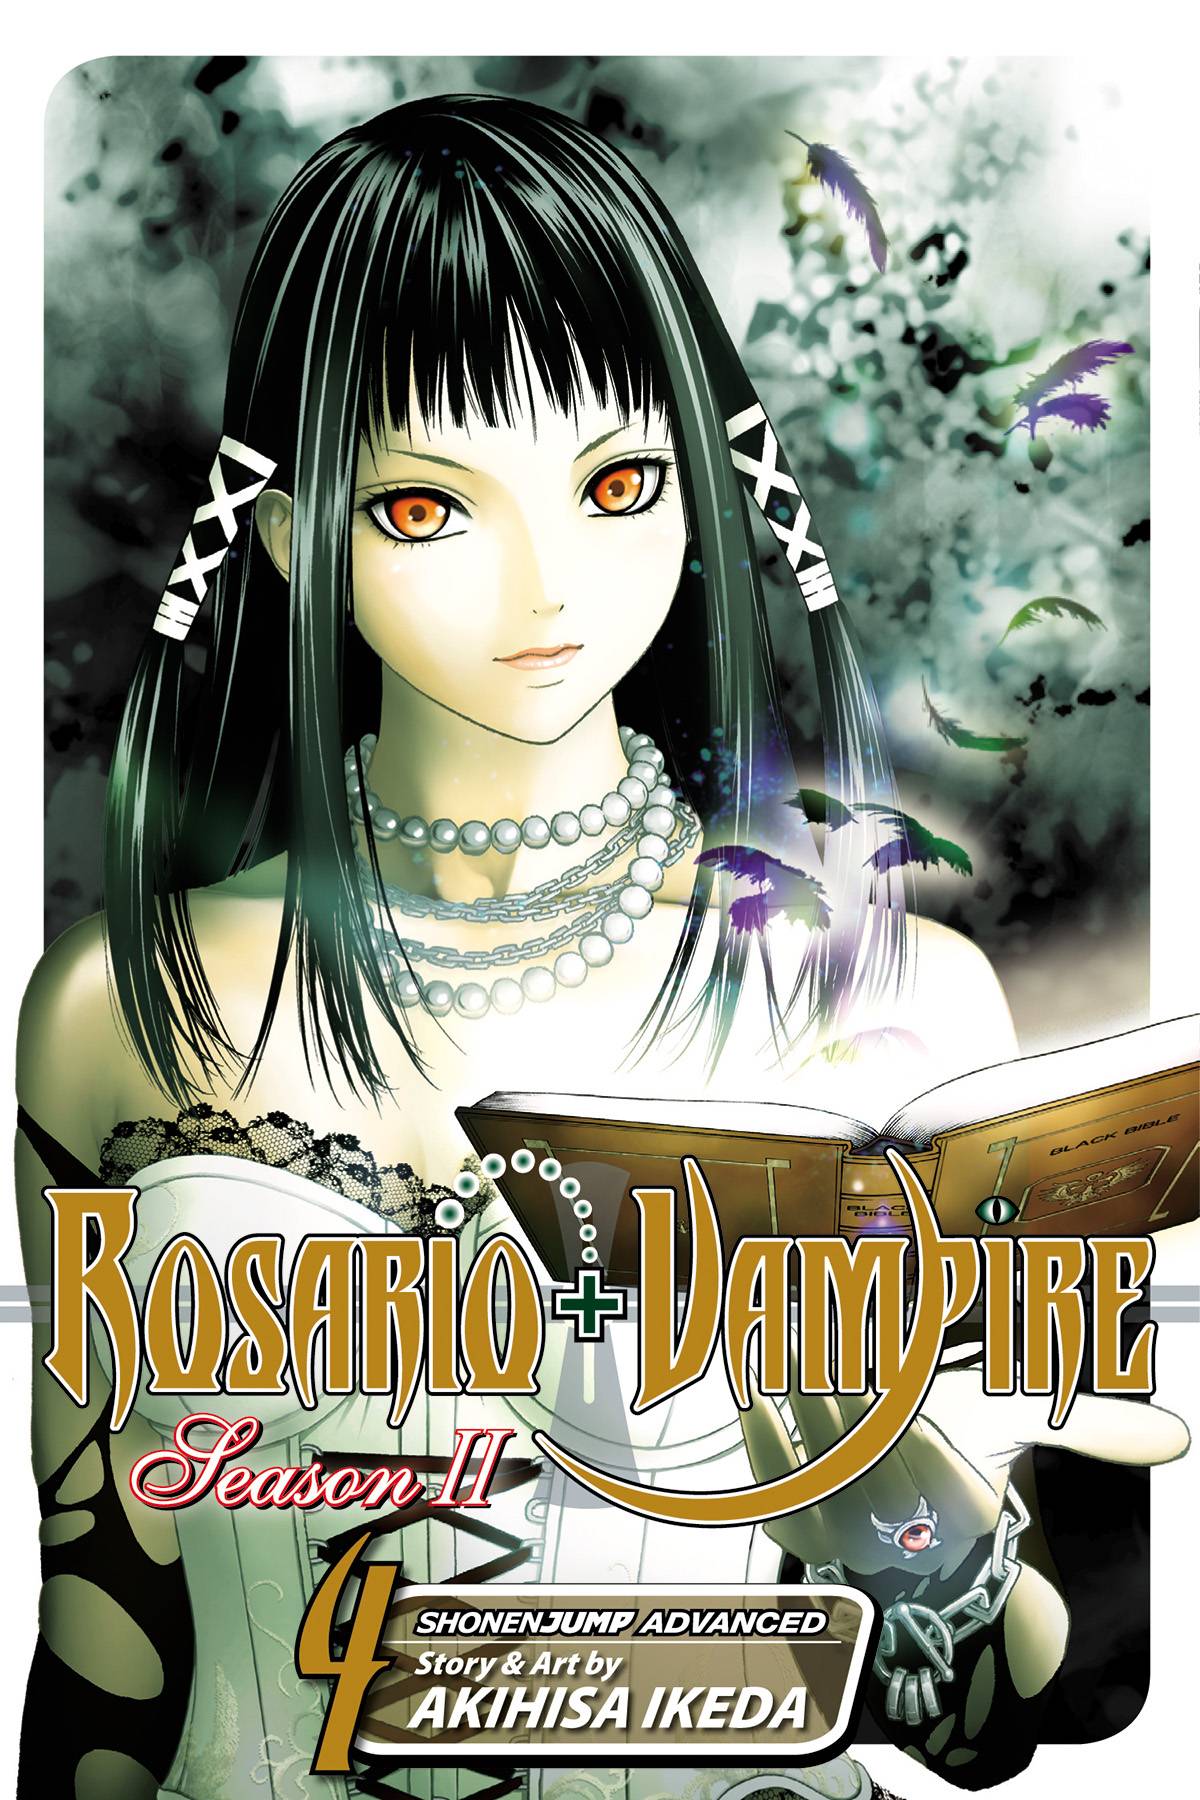 Rosario Vampire Season II Manga Volume 4